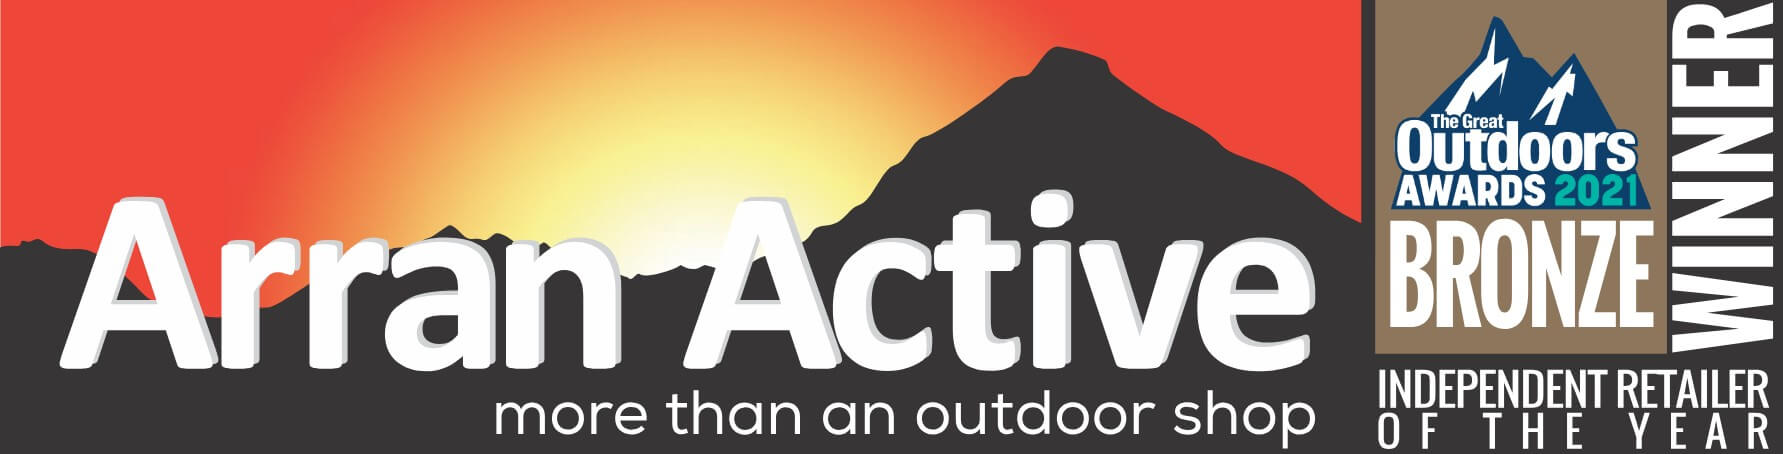 Arran Active Outdoor Clothing & Equipment Shop Logo